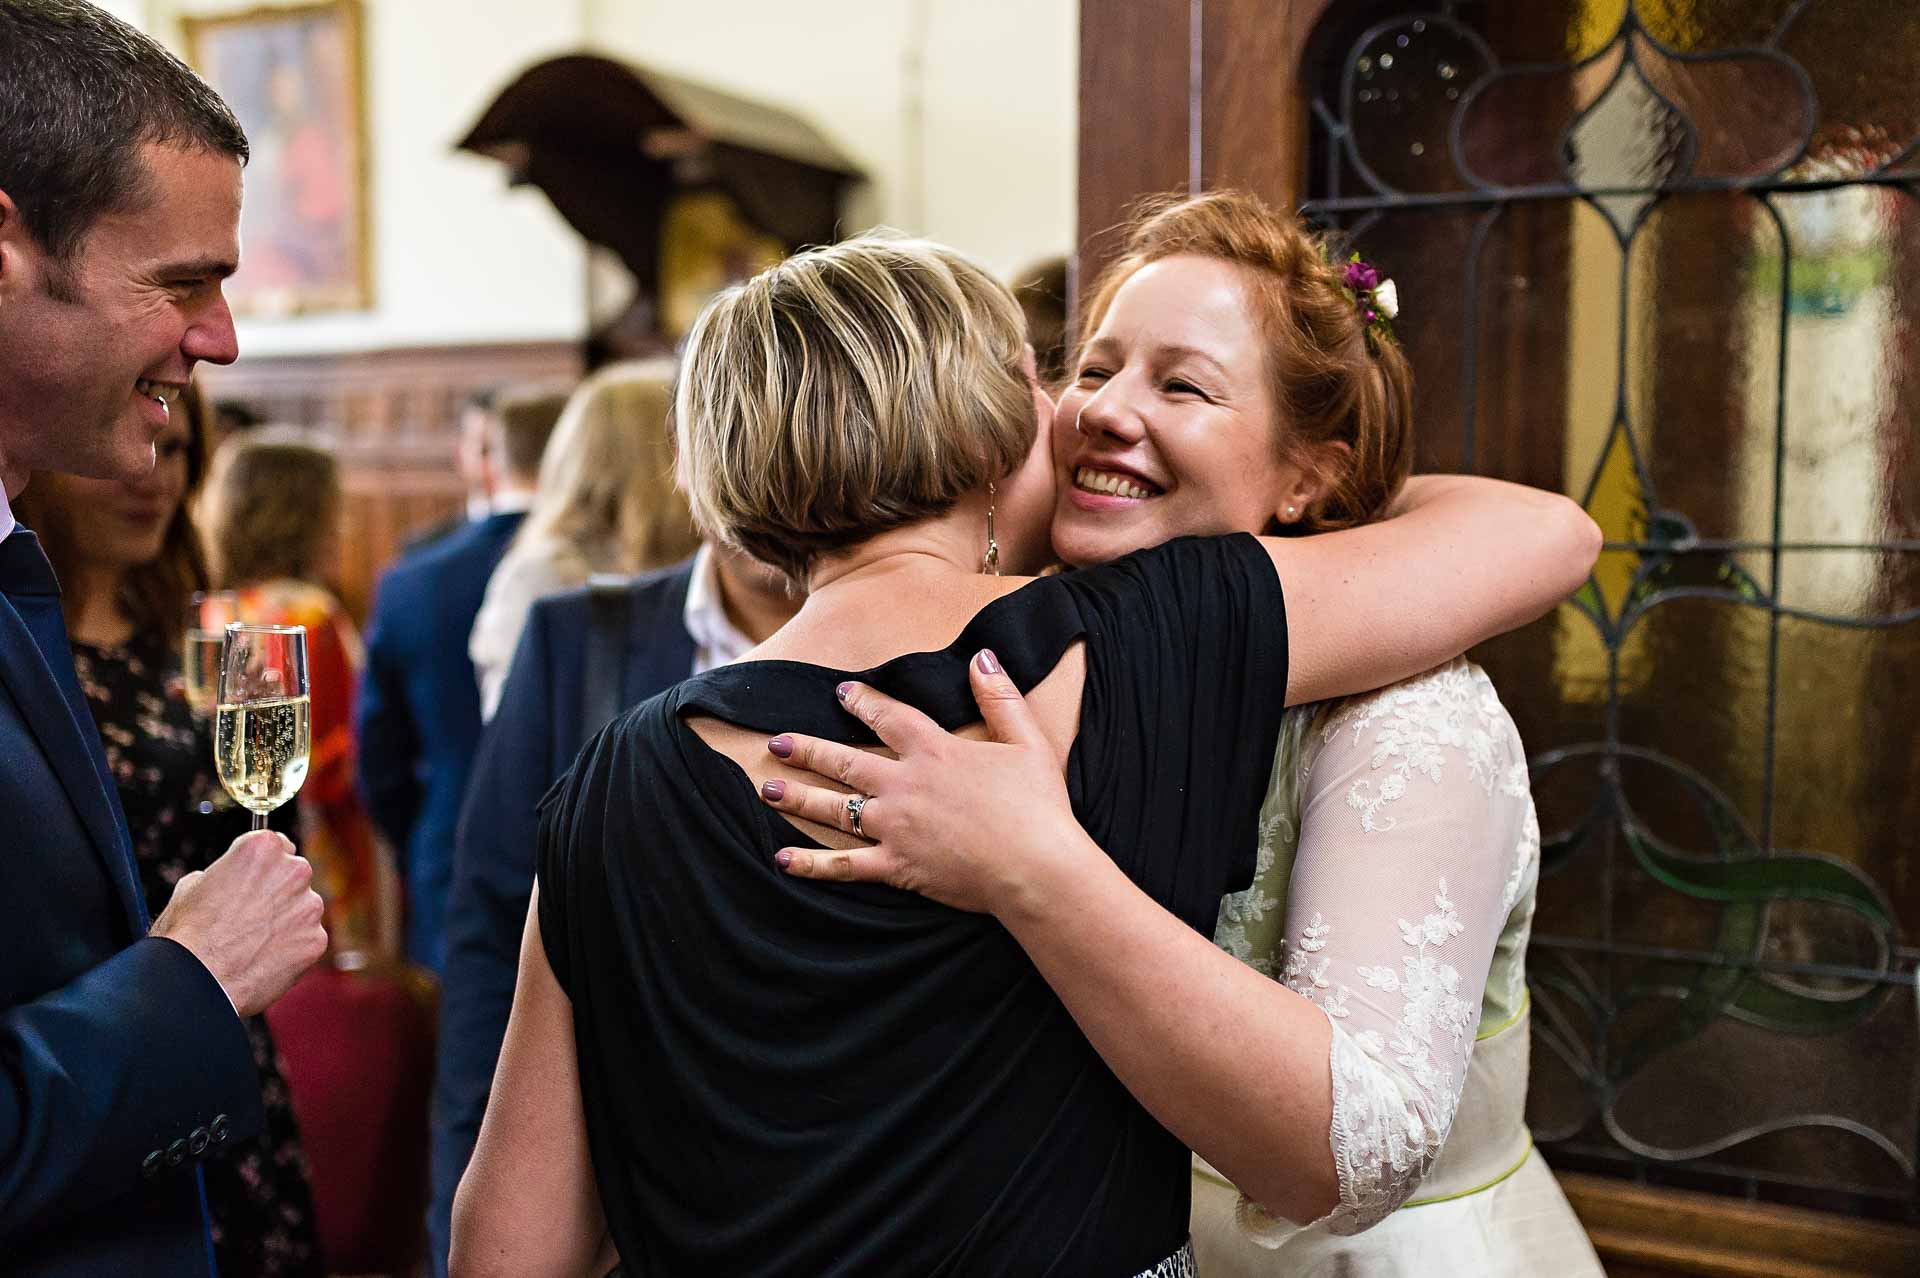 Guests Hugs Bride at Wedding